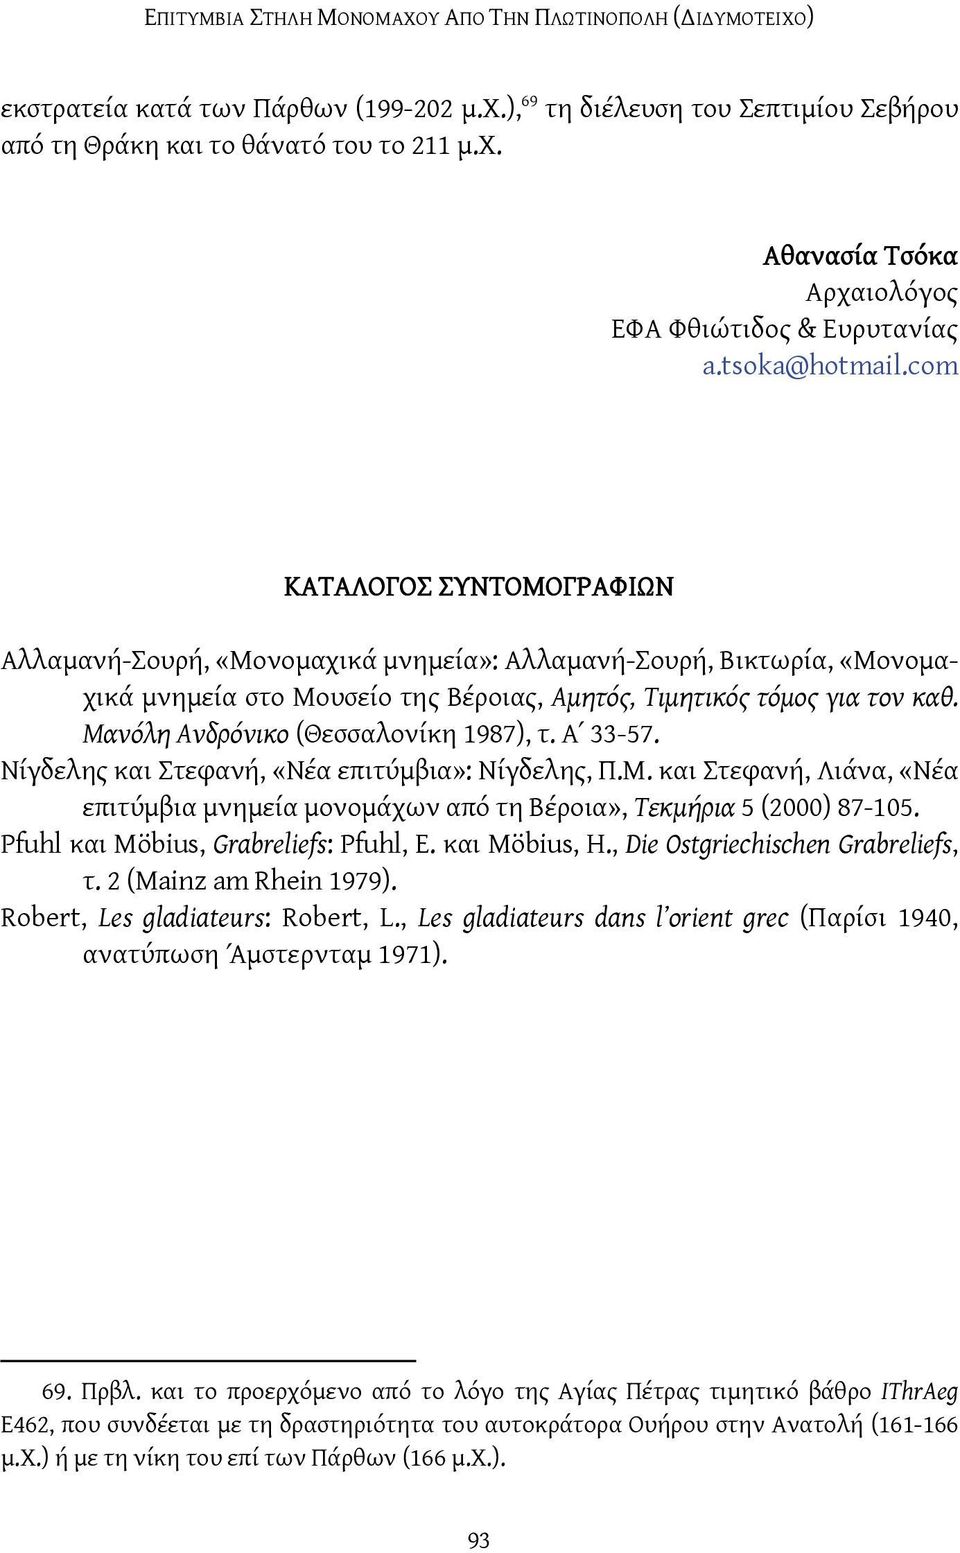 Μανόλη Ανδρόνικο (Θεσσαλονίκη 1987), τ. Α 33-57. Νίγδελης και Στεφανή, «Νέα επιτύμβια»: Νίγδελης, Π.Μ. και Στεφανή, Λιάνα, «Νέα επιτύμβια μνημεία μονομάχων από τη Βέροια», Τεκμήρια 5 (2000) 87-105.